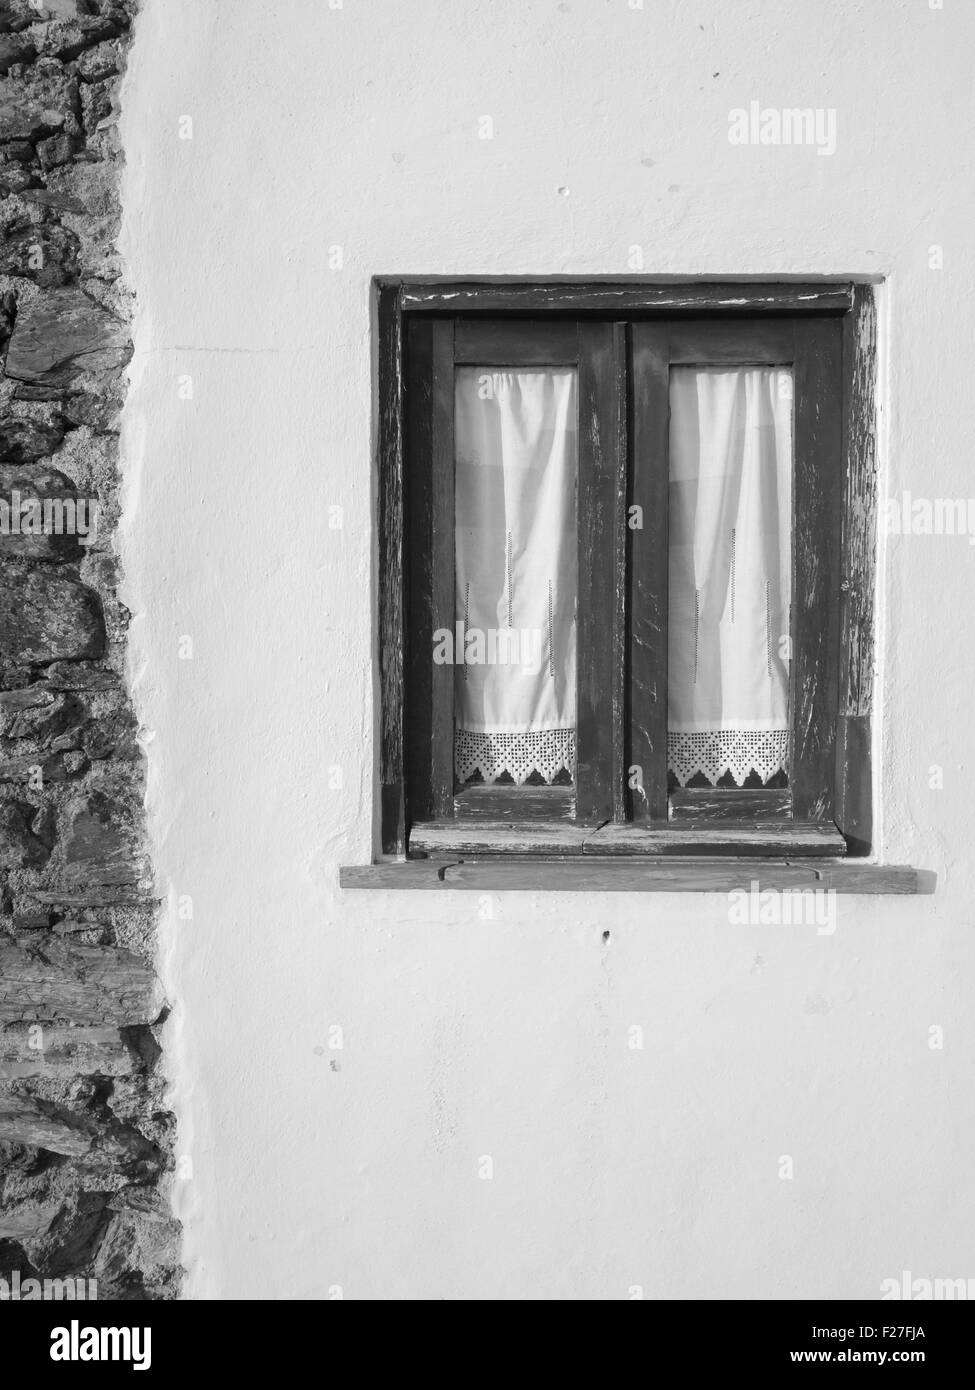 Fotografía en blanco y negro de la casa vieja ventana con cortinas tradicionales Foto de stock